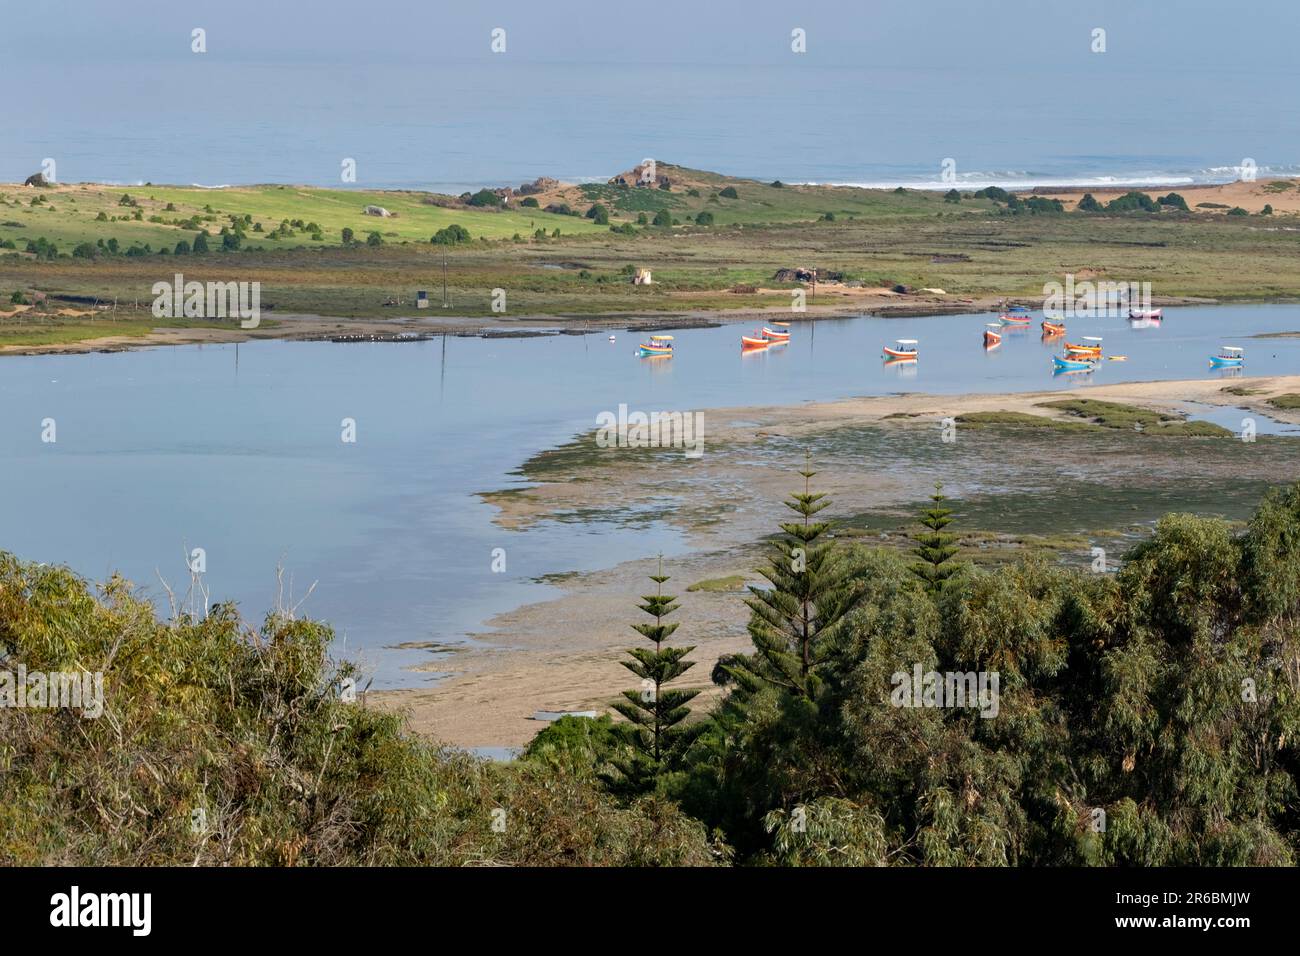 Des bateaux amarrés dans le lagon de Sidi Moussa-Oualidia ONT protégé les zones humides Ramsar près de la ville d'Oualidia au Maroc Banque D'Images